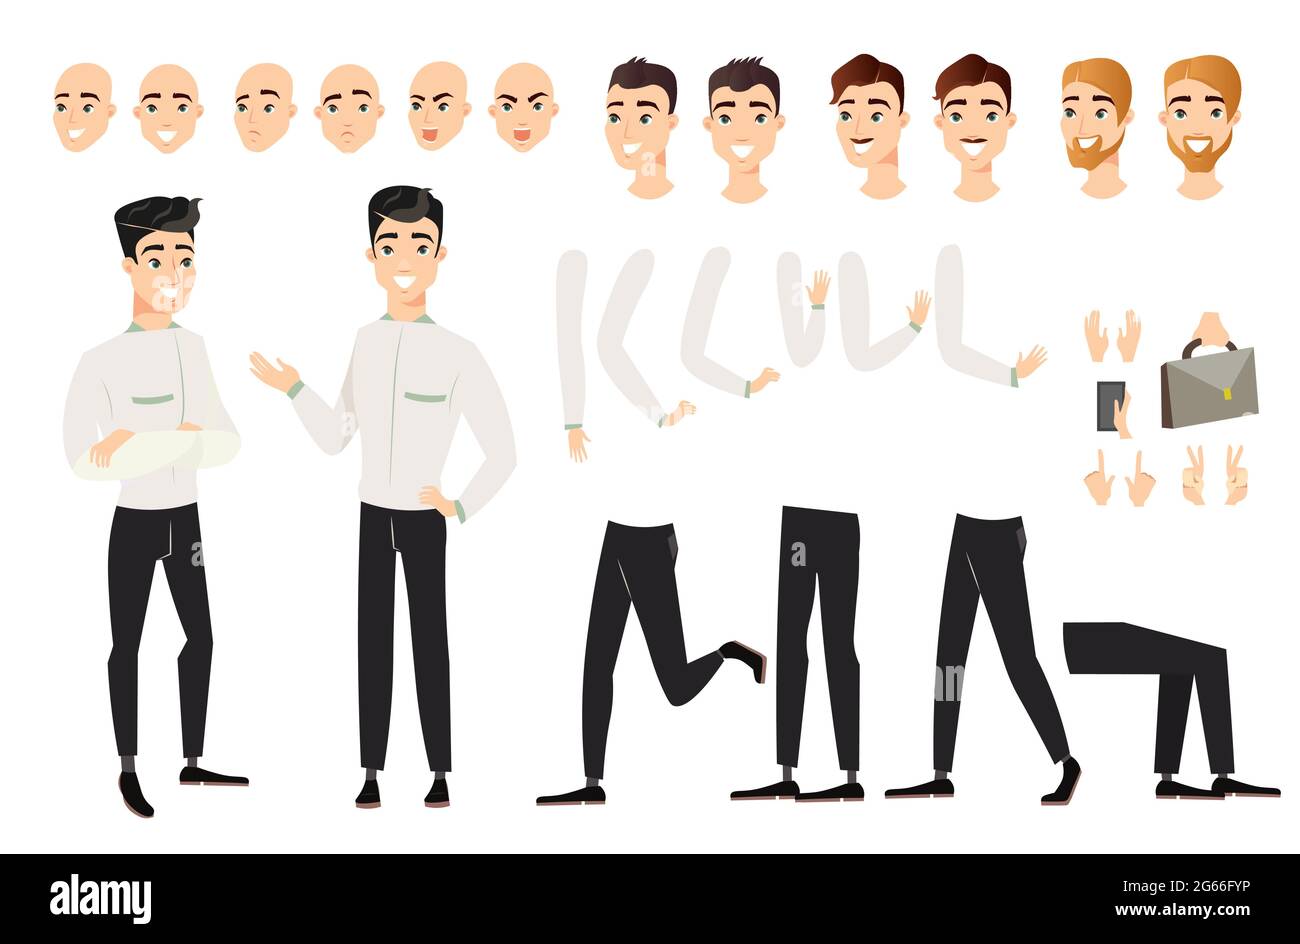 Vektor-Illustration von schönen Mann mit verschiedenen Positionen von Körperteilen gesetzt. Cartoon männliche Figur mit schwarzen Haaren in verschiedenen Ansichten, Posen, Gesicht Stock Vektor